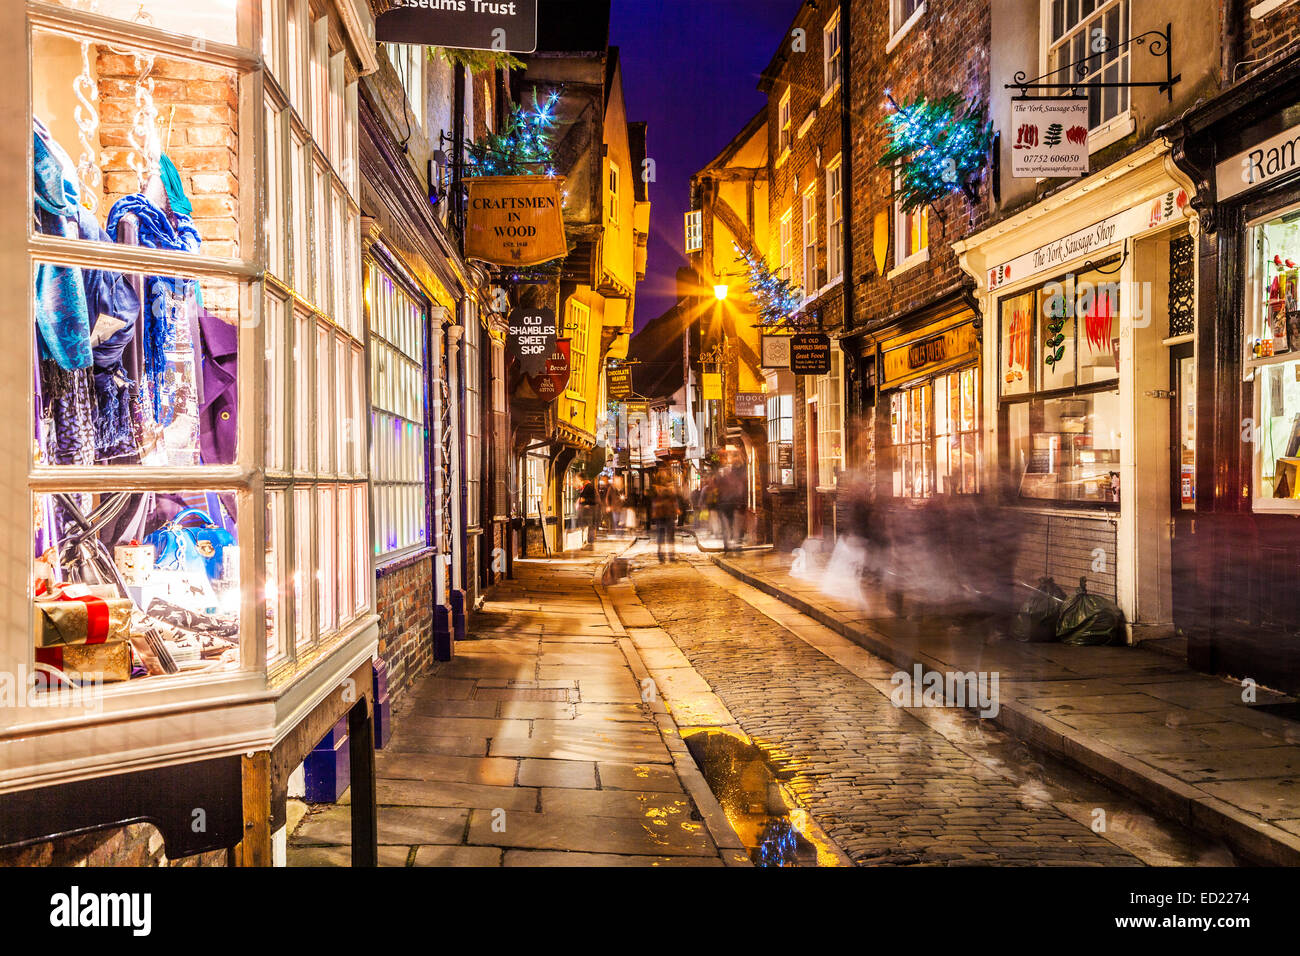 Natale nel caos, la storica via medievale nel centro della città vecchia di York al crepuscolo. Foto Stock